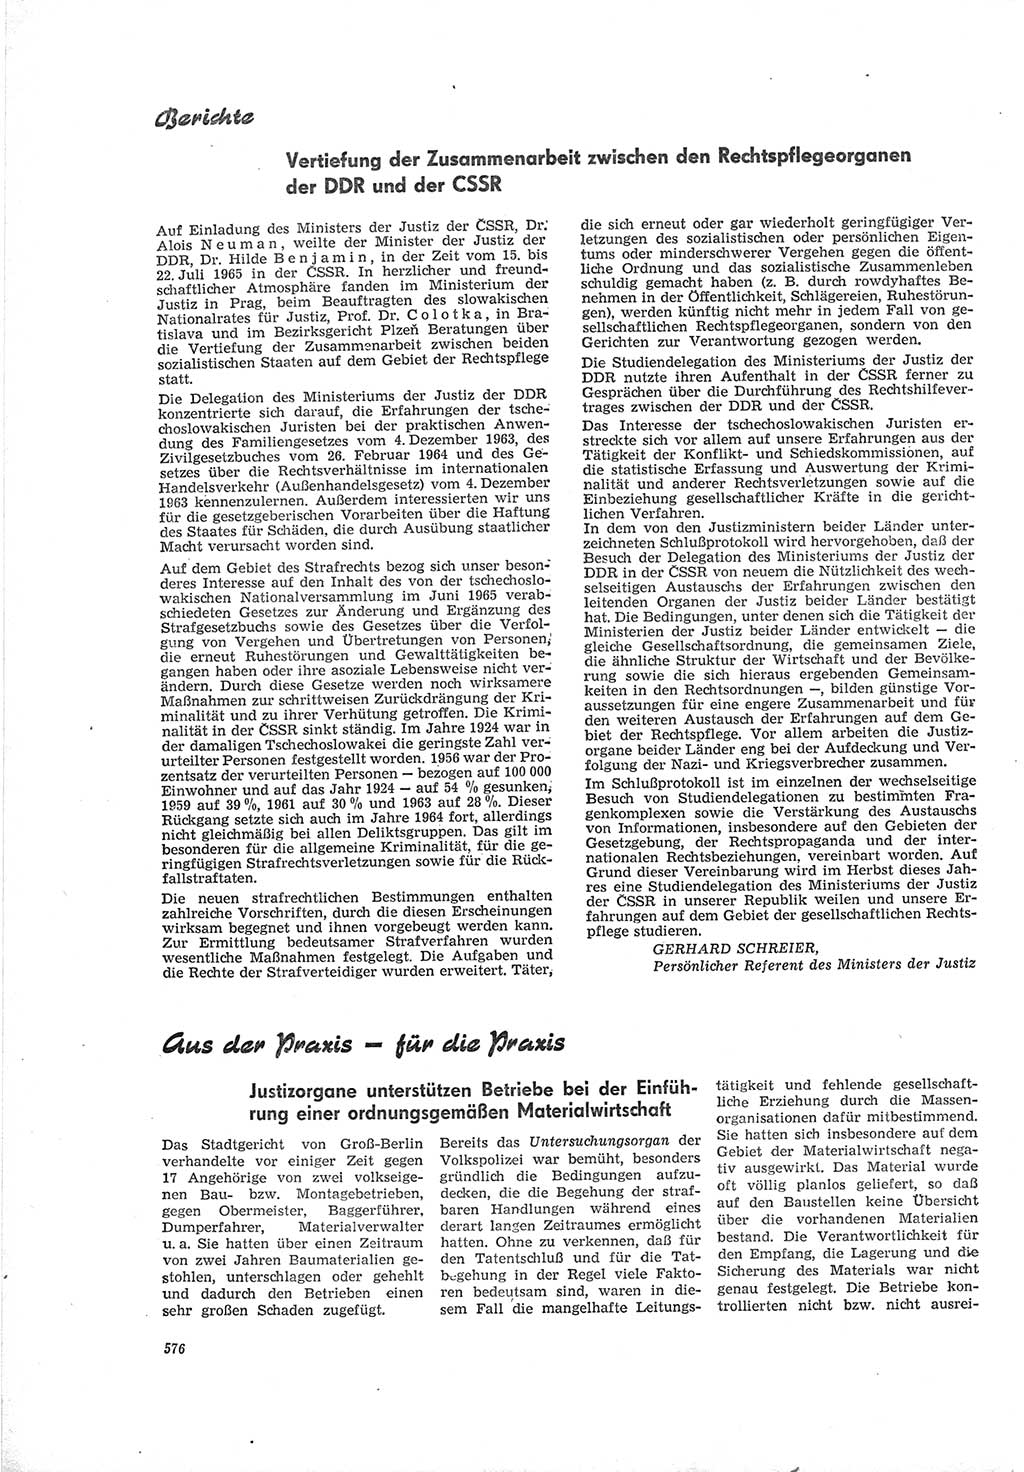 Neue Justiz (NJ), Zeitschrift für Recht und Rechtswissenschaft [Deutsche Demokratische Republik (DDR)], 19. Jahrgang 1965, Seite 576 (NJ DDR 1965, S. 576)